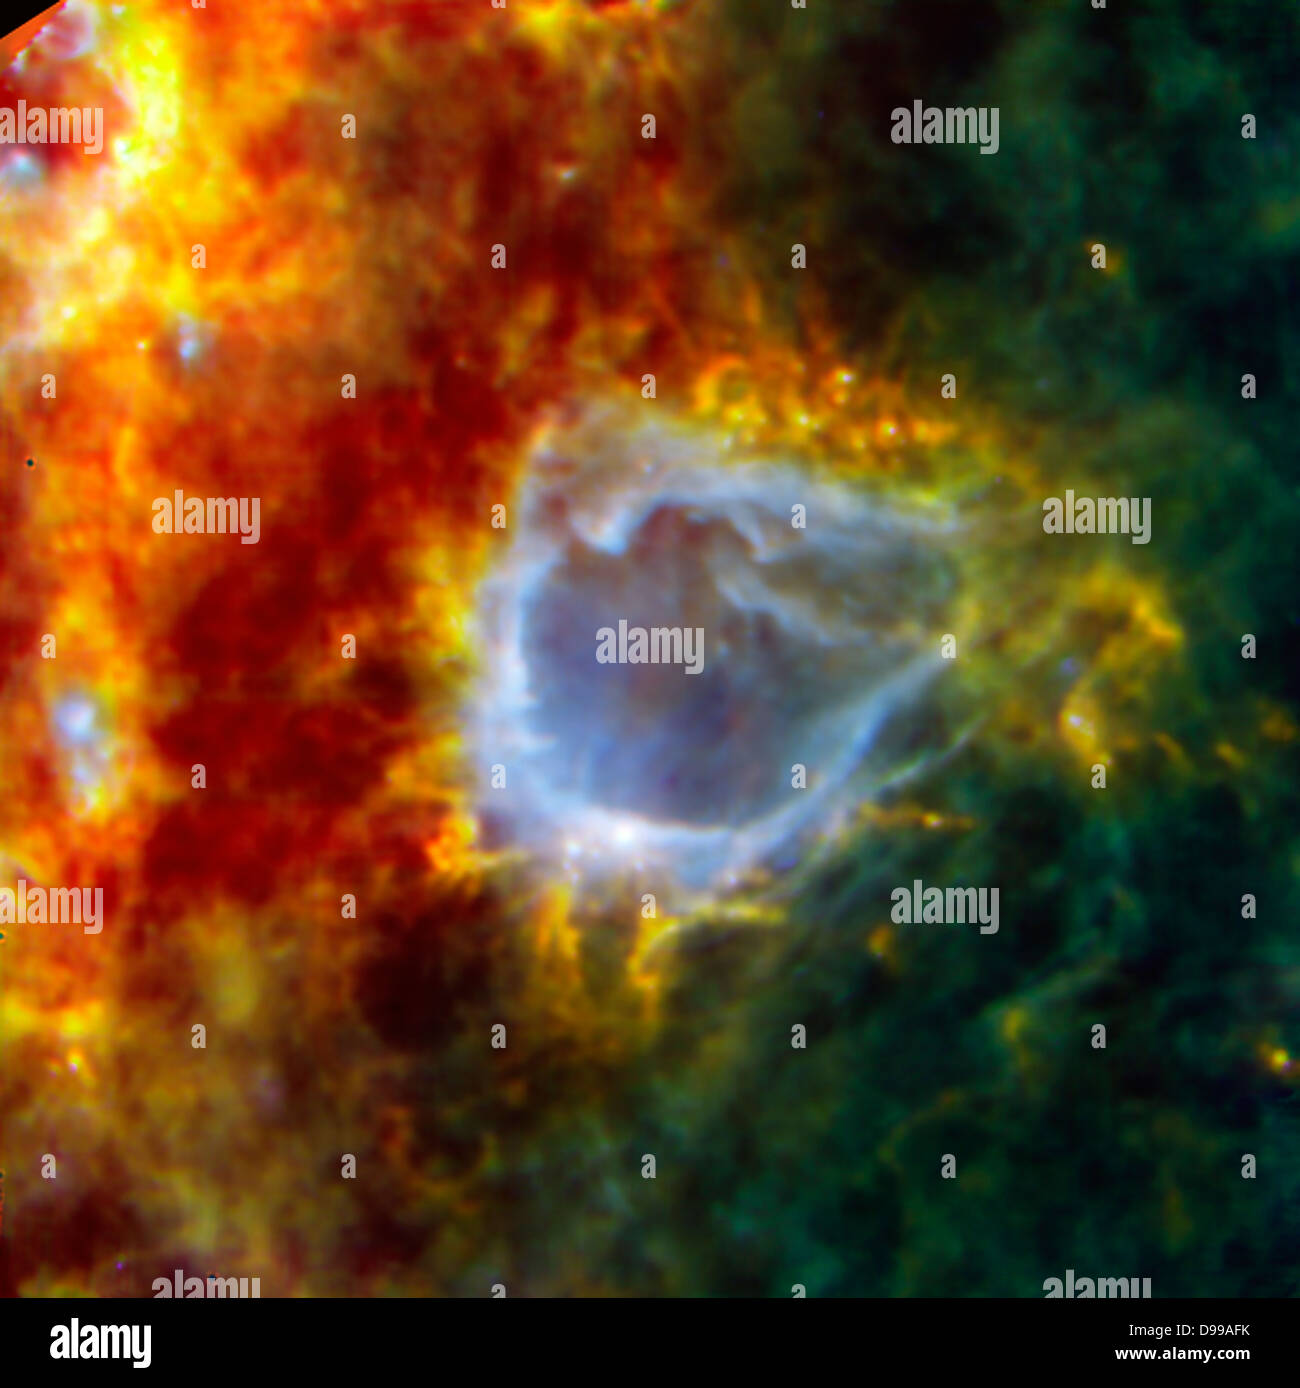 Estresante Leve prosperidad RCW 120 es una burbuja galáctica. Anidado en el shell en torno a esta gran  burbuja es una estrella embrionaria que parece destinada a convertirse en  una de las estrellas más brillantes